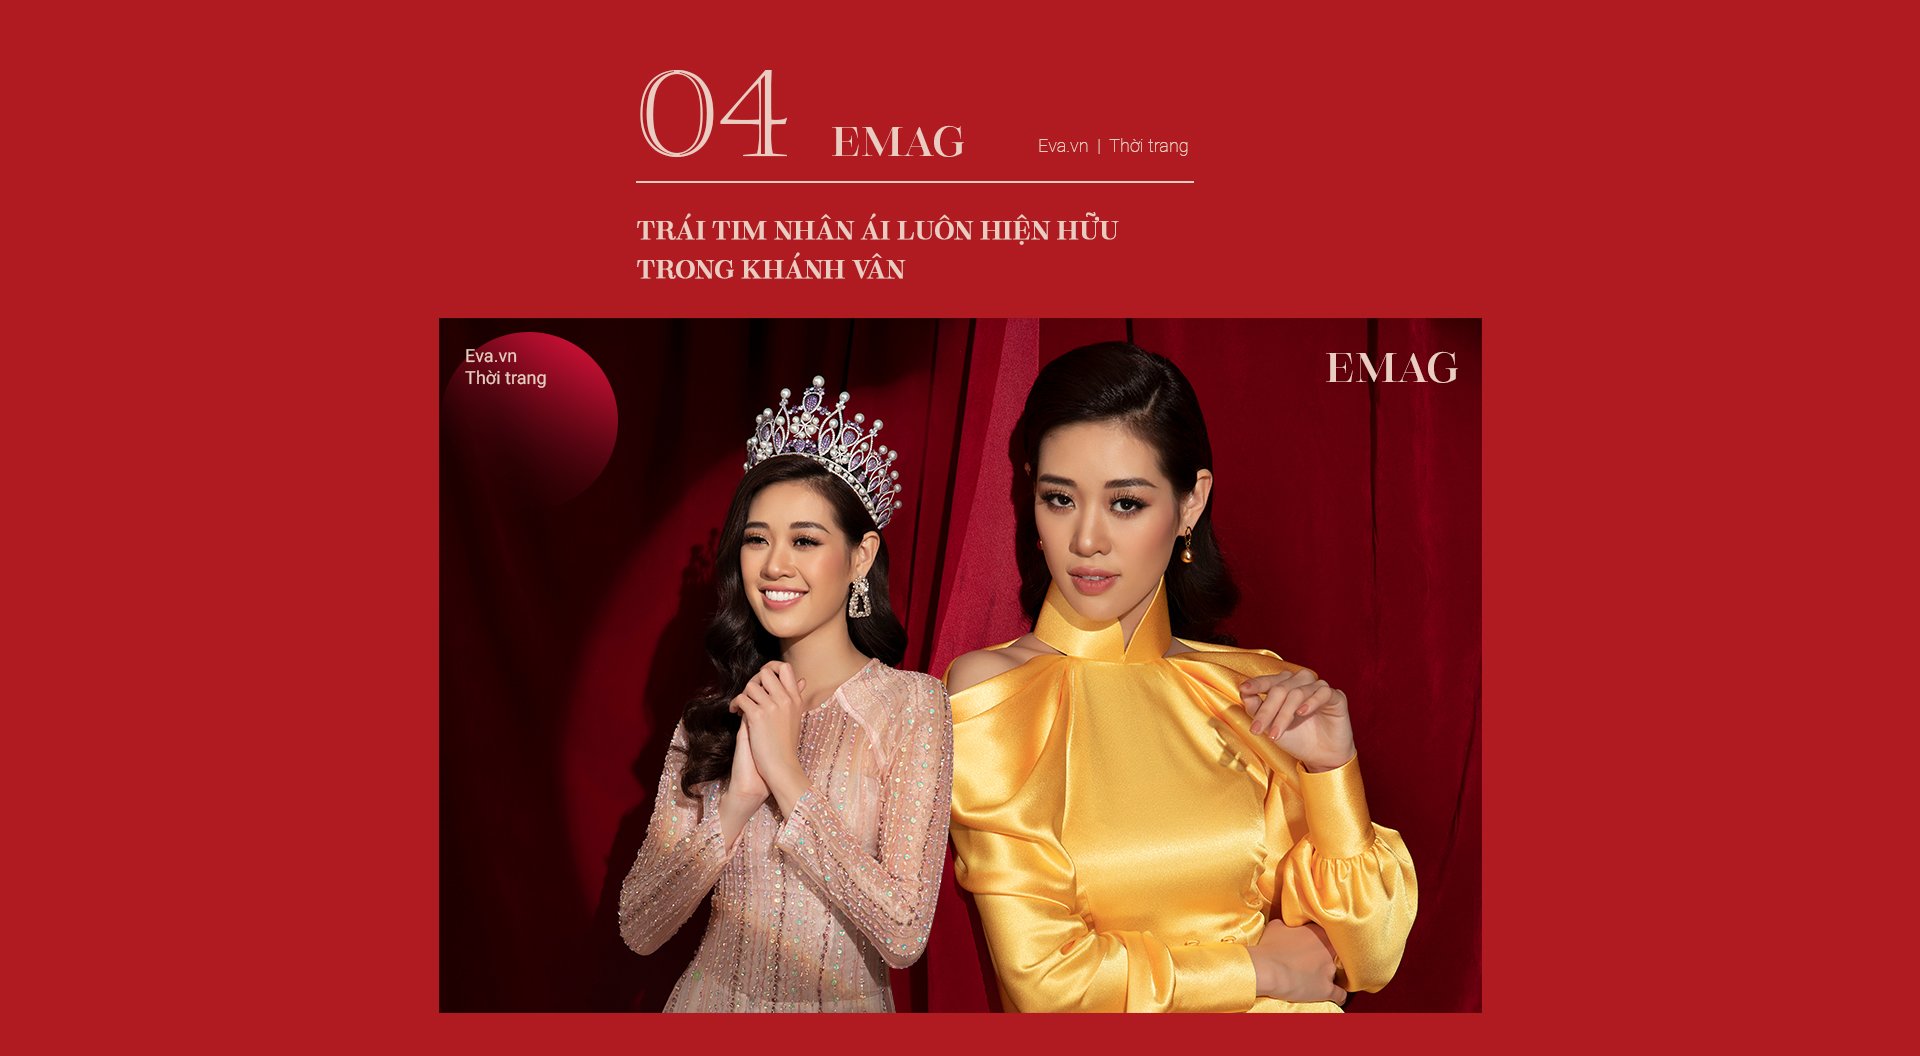 Hoa hậu Hoàn vũ Khánh Vân - Biến cố và sóng gió giúp trái tim nhân ái đăng quang - 16